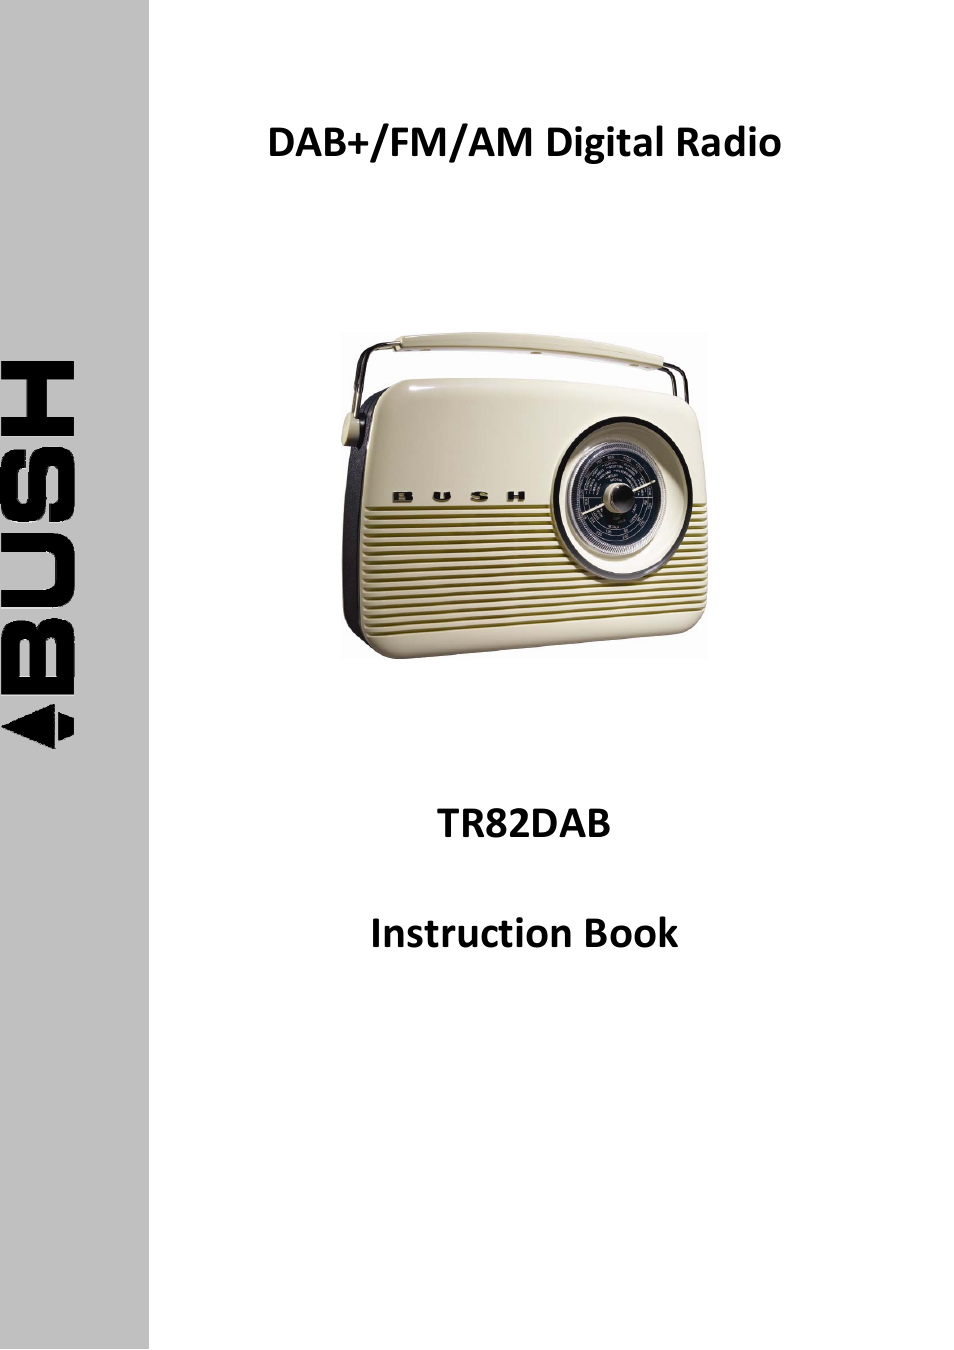 BUSH DAB+/FM/AM Digital Radio TR82DAB User Manual | 16 pages